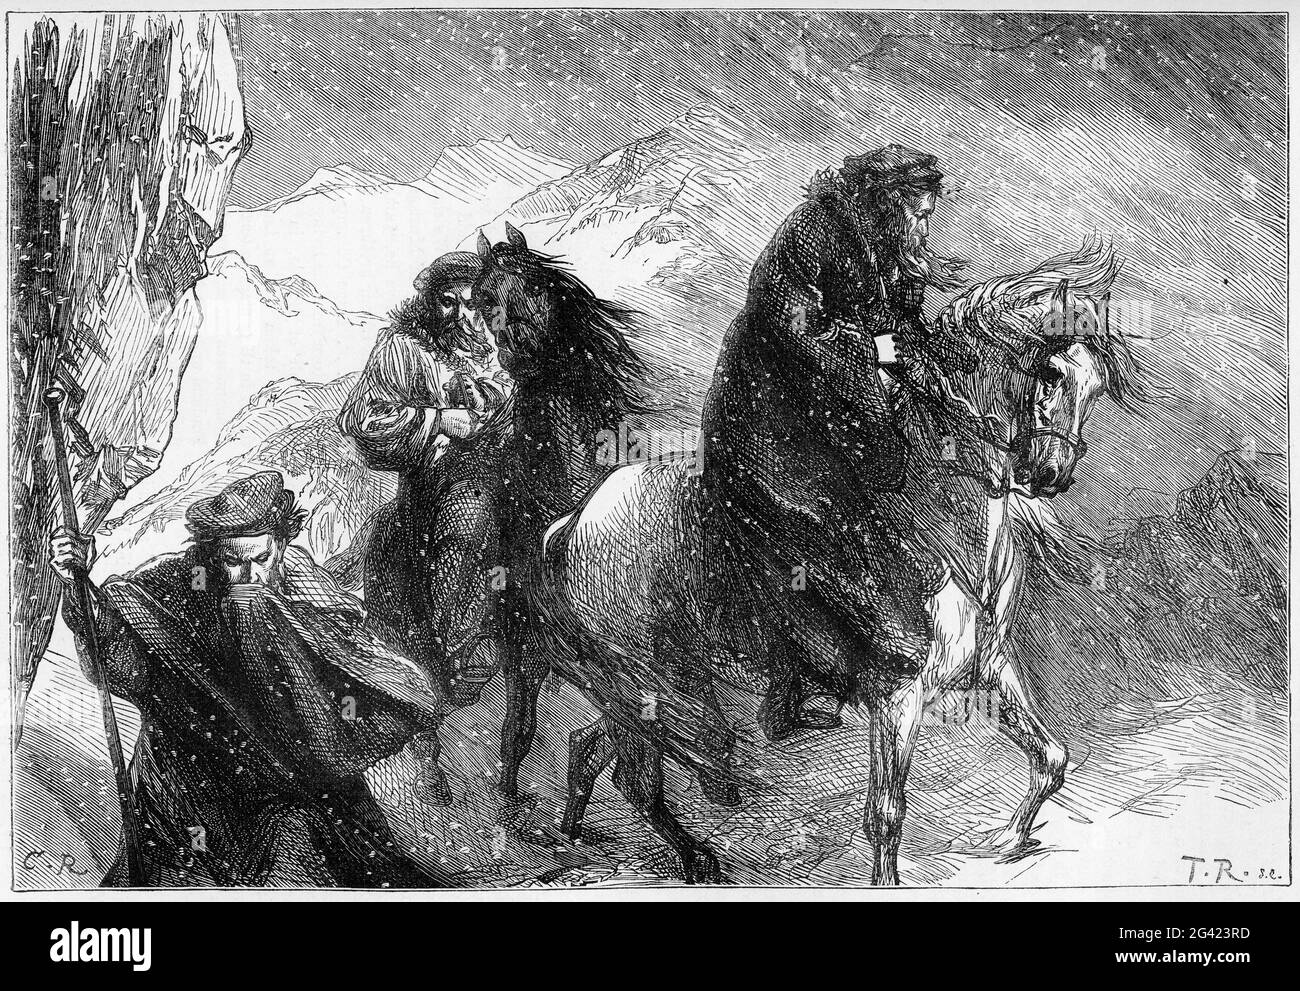 Incisione del riformatore William Farel e dei suoi compagni che attraversano le Alpi per portare il loro vangelo ai Valdesi, che si erano separati dalla società mondana vivendo nelle alpi del nord Italia. Foto Stock